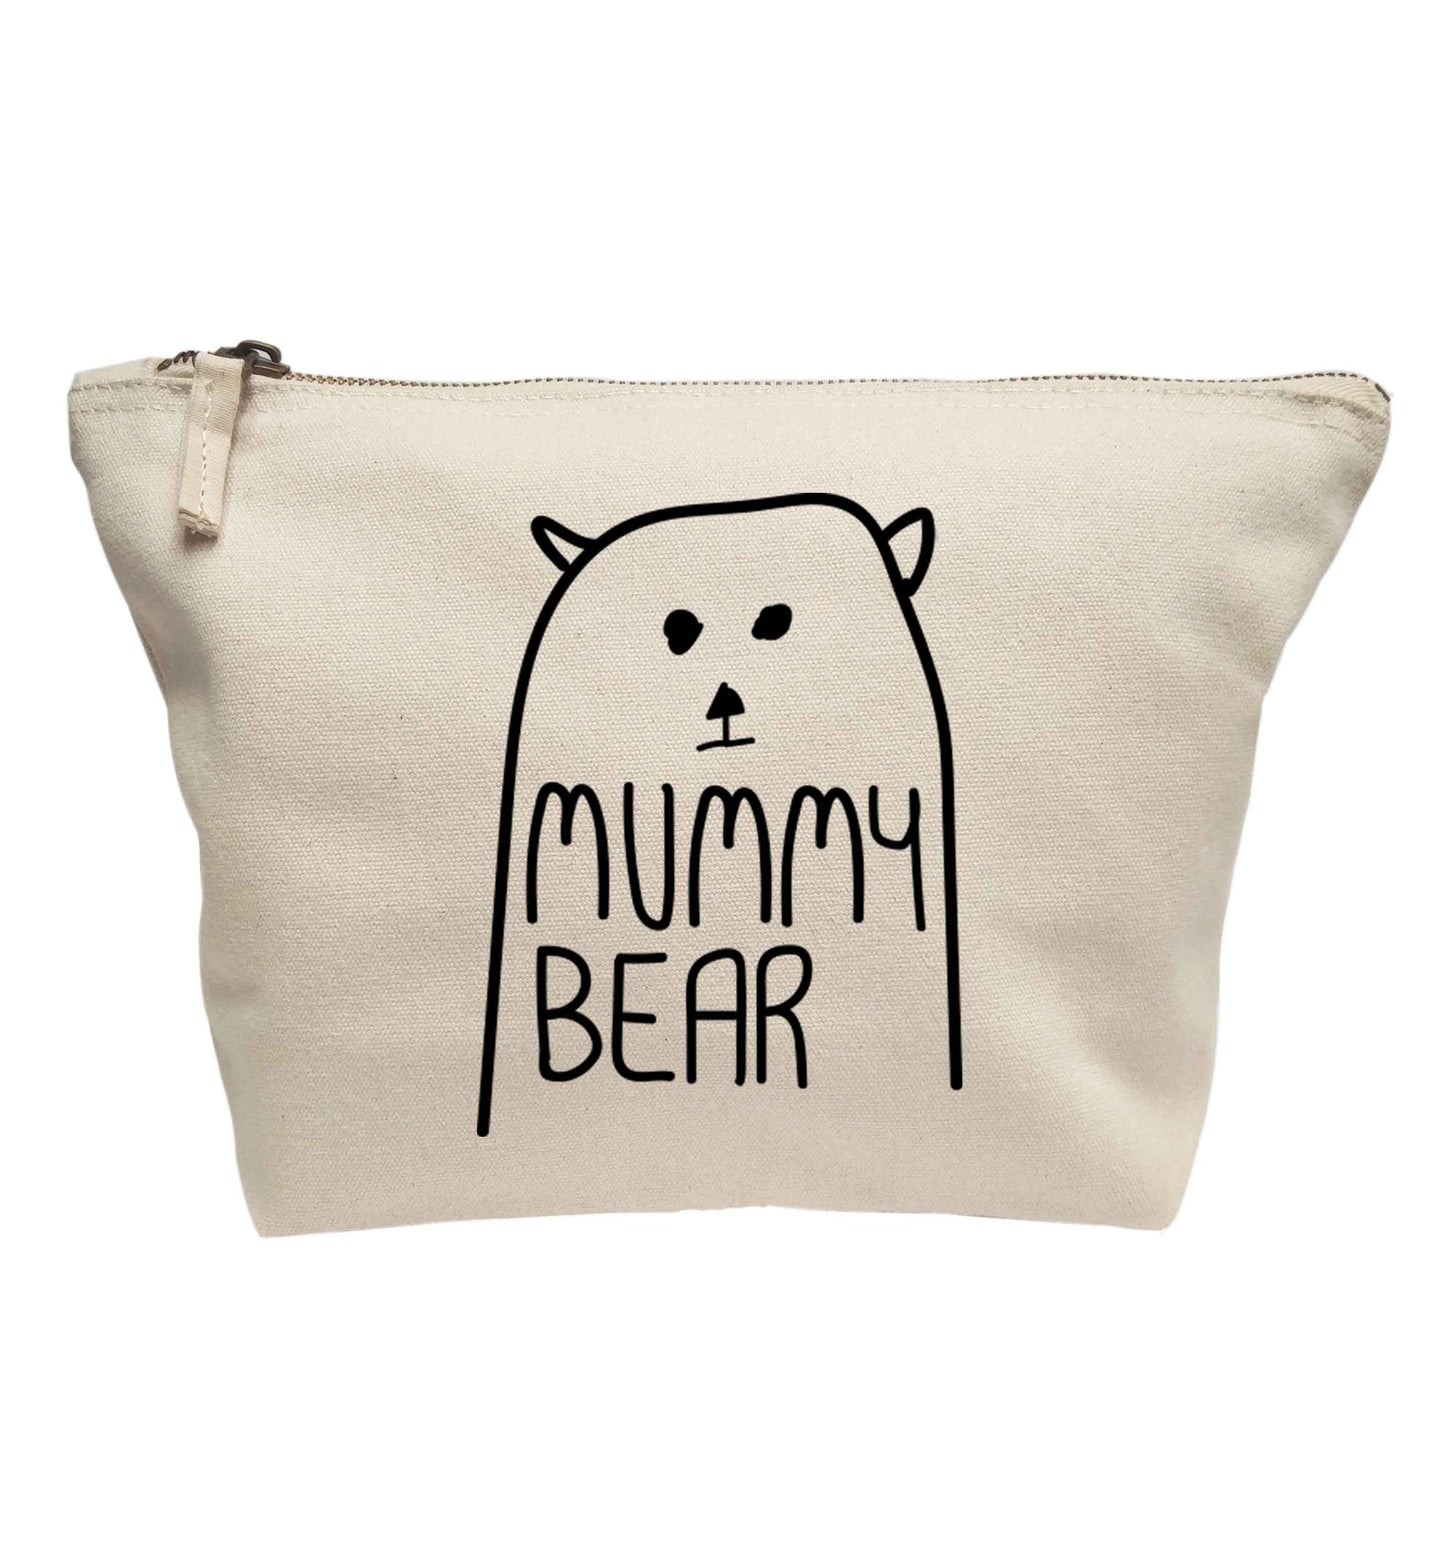 Mummy bear | Makeup / wash bag